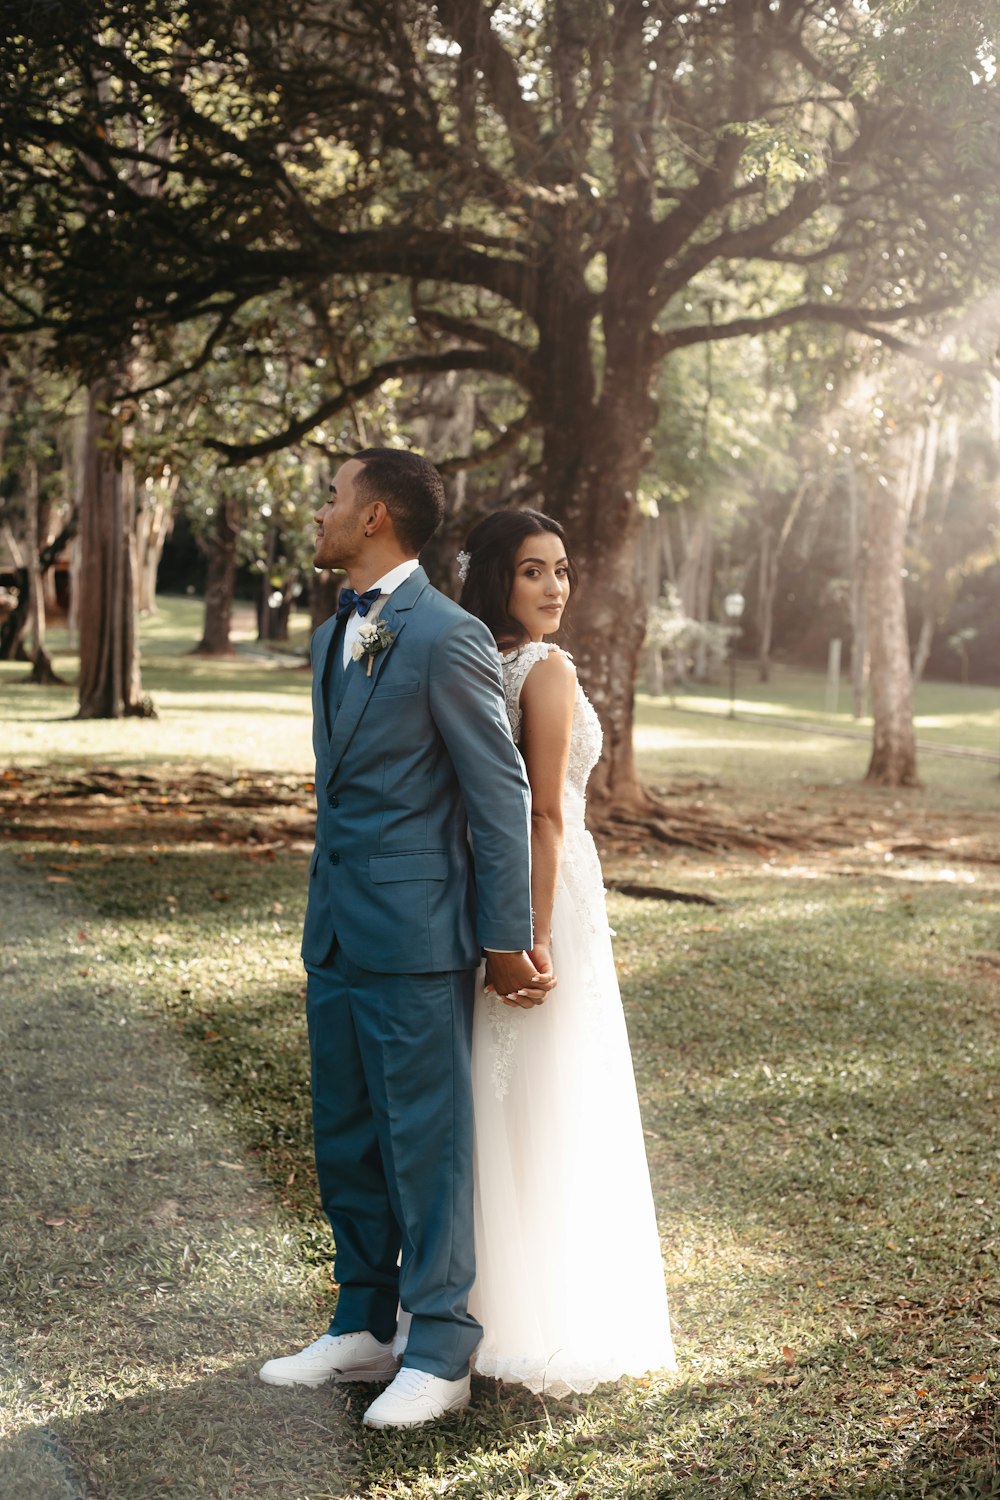 Braut und Bräutigam, die im Gras unter einem Baum stehen